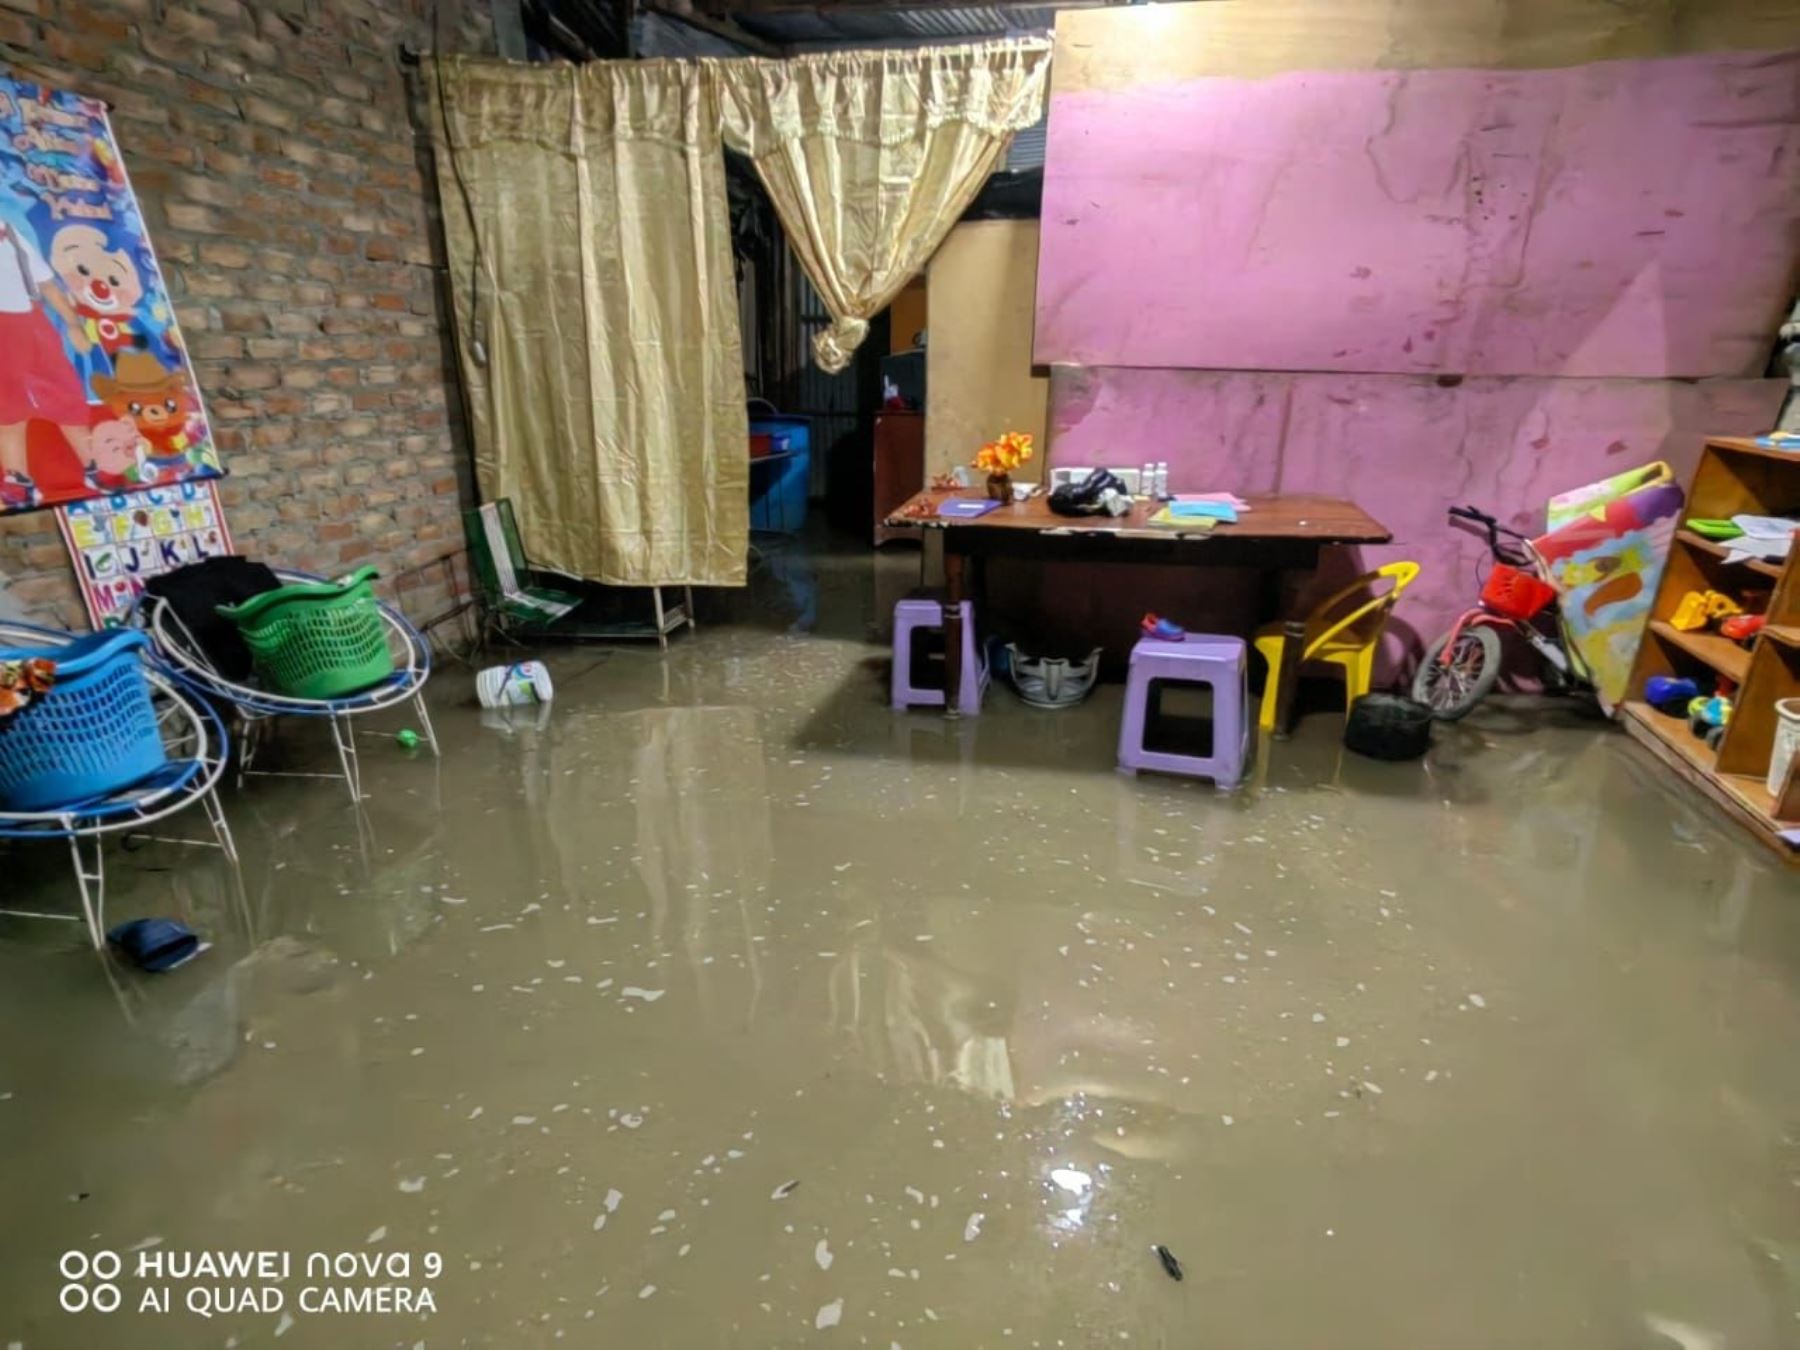 Tambo Grande suffers from rains